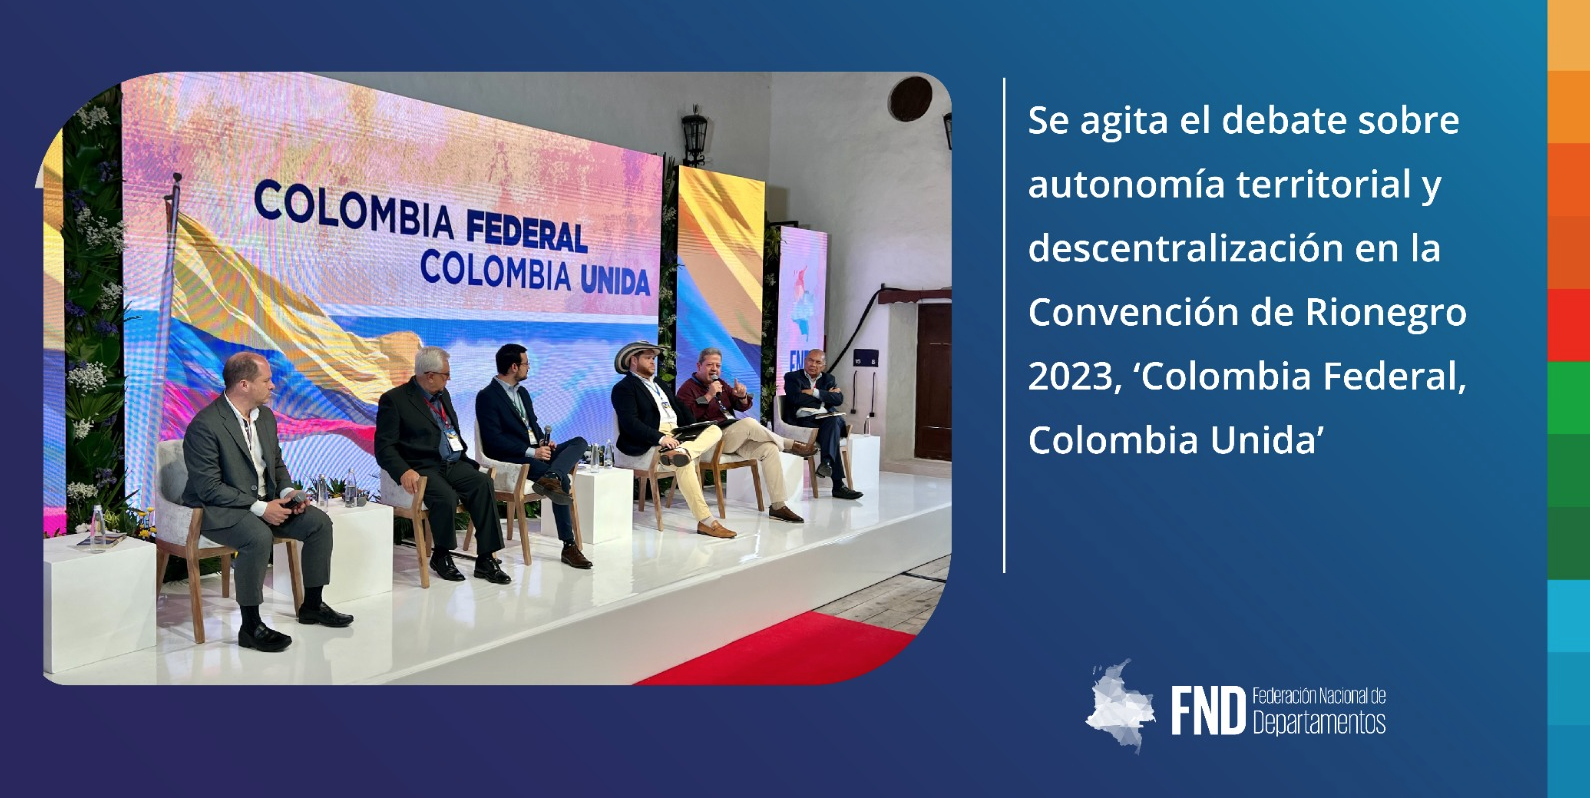 image Se agita el debate sobre autonomía territorial y descentralización en la Convención de Rionegro 2023, ‘Colombia Federal, Colombia Unida’